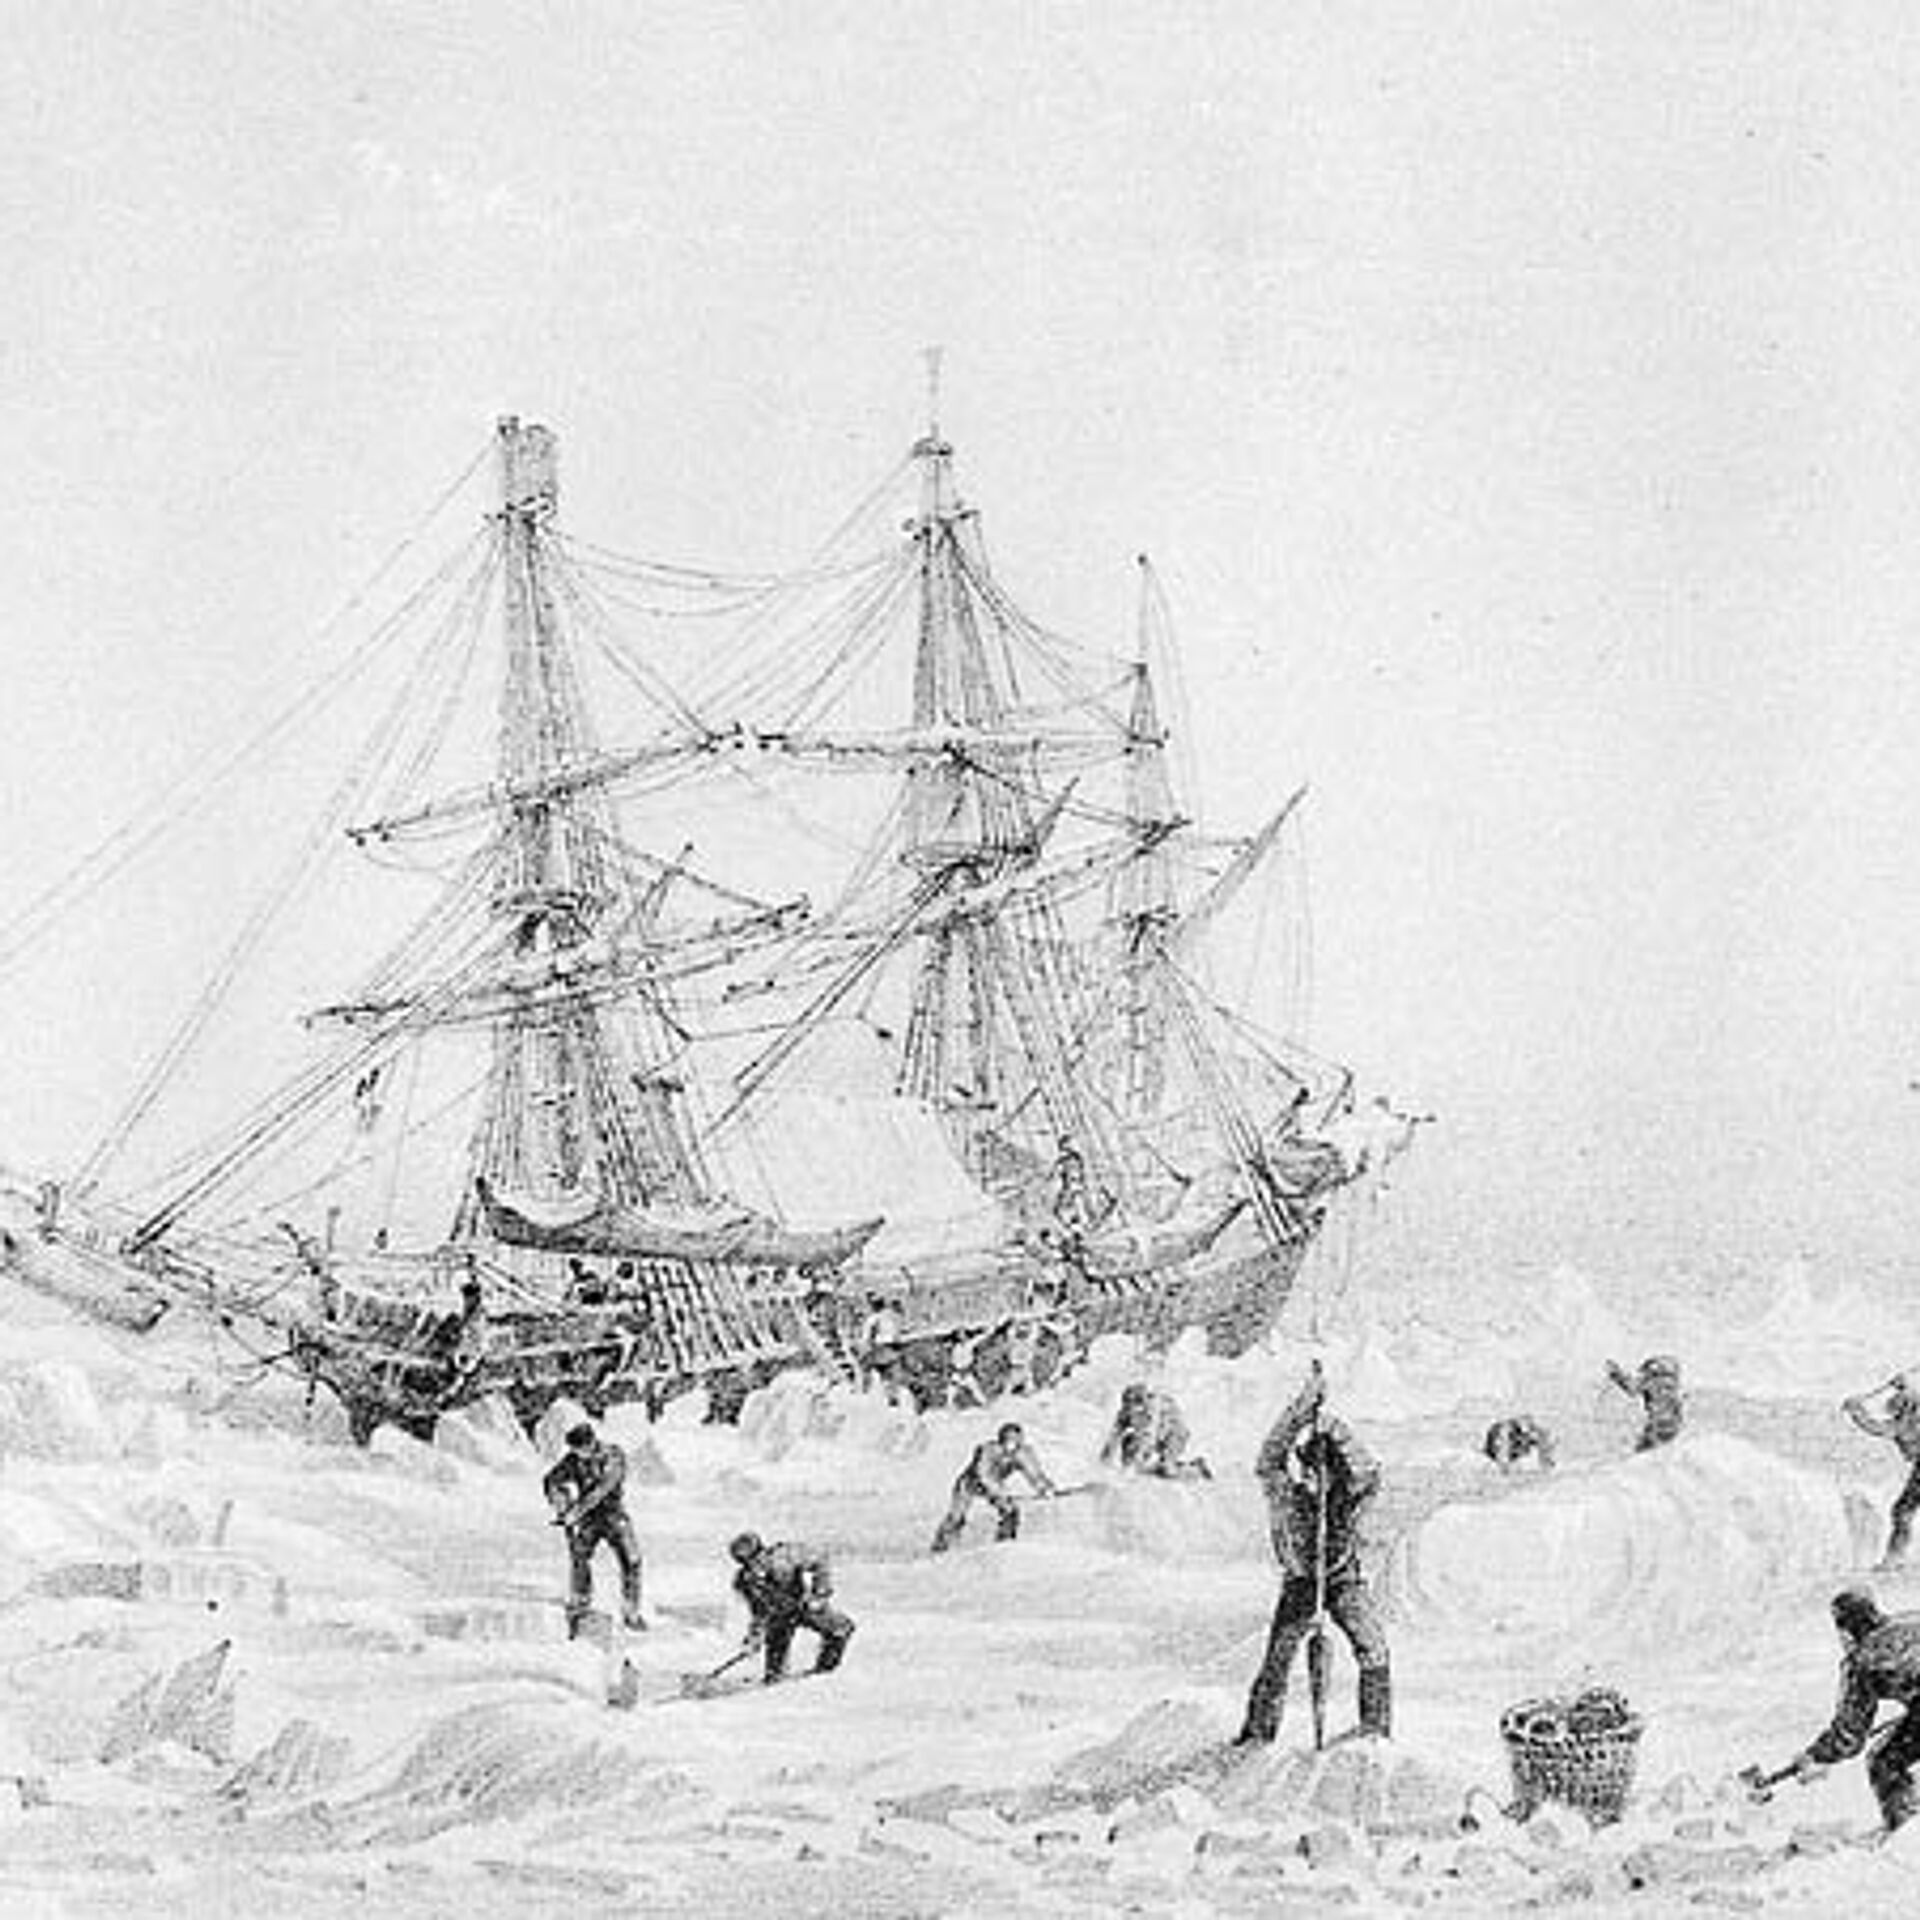 Трагичная судьба одной из первых английских экспедиций в Арктику